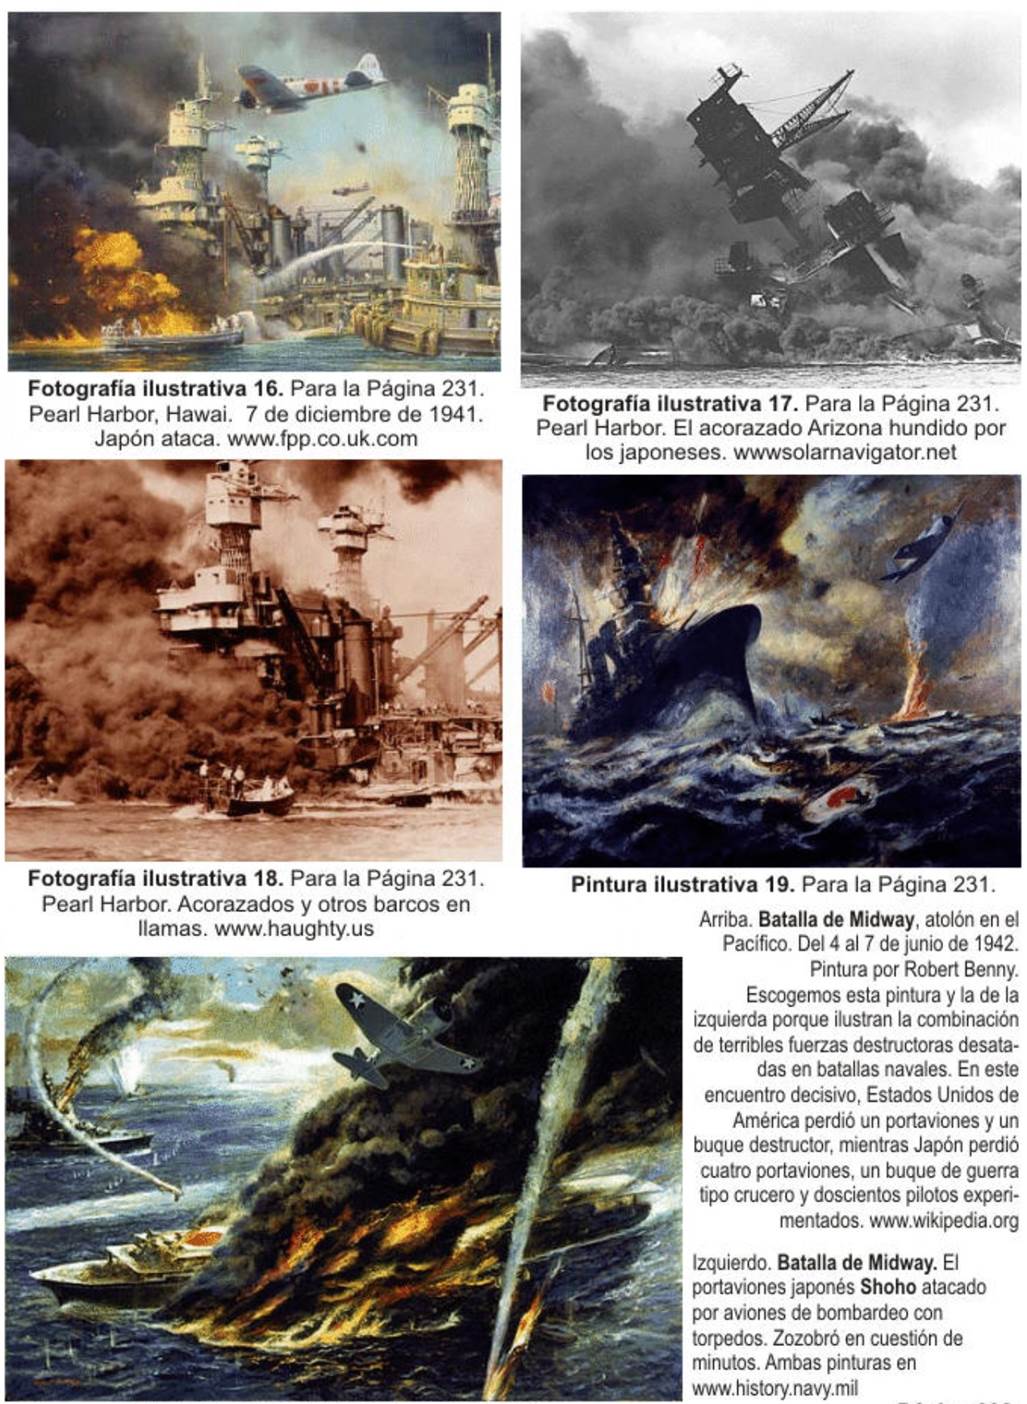 Collage de fotografías y pinturas de barcos hundidos y aviones derribados durante la Segunda Guerra Mundial